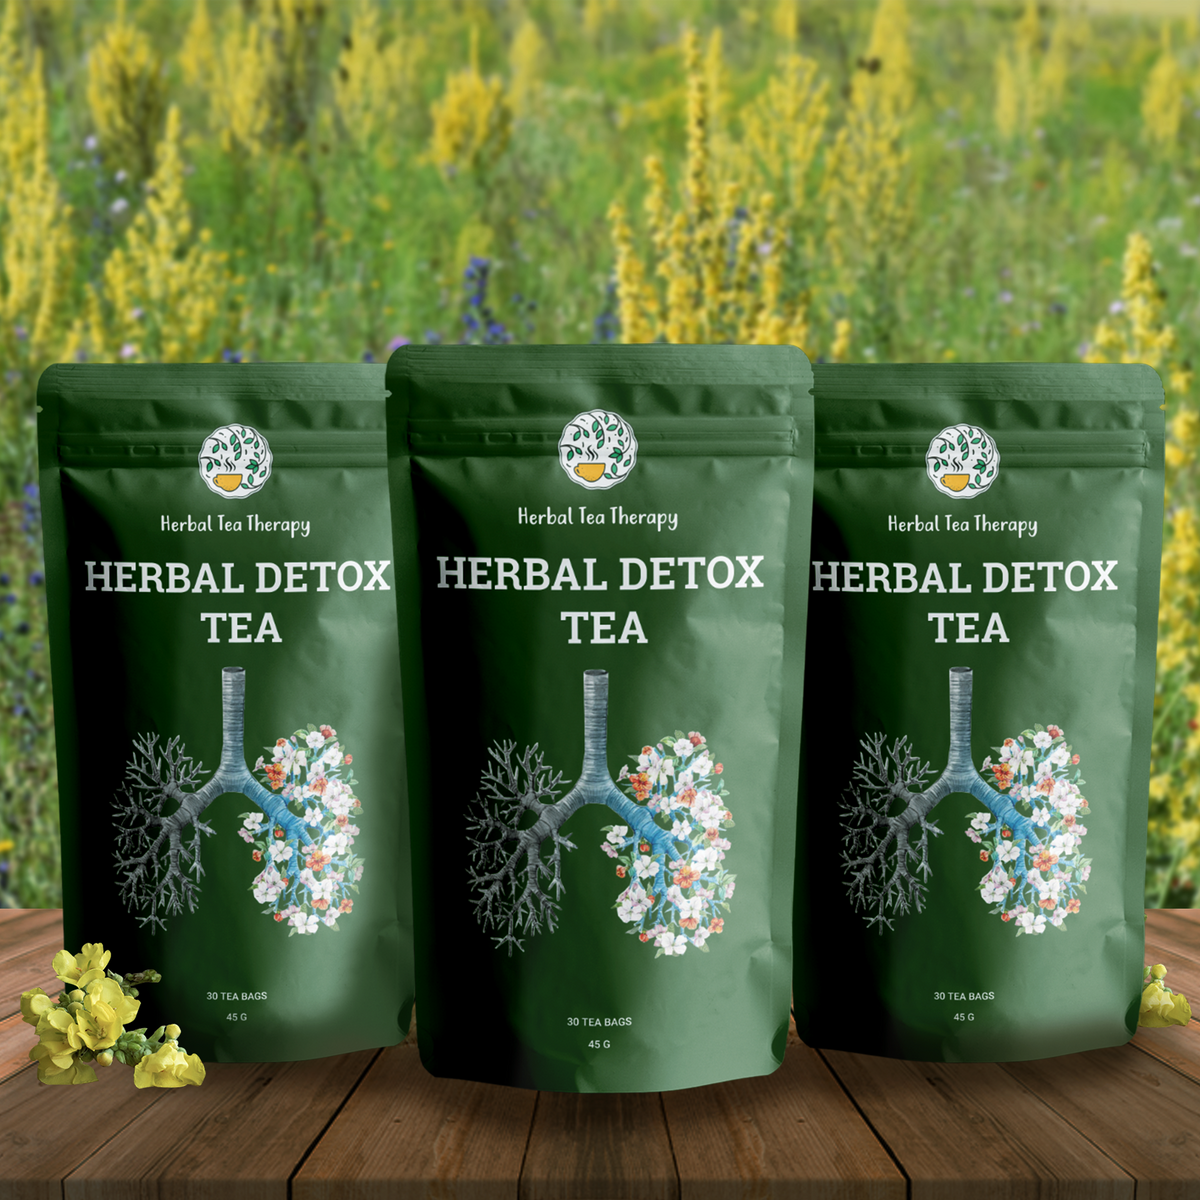 Try 2 Bottles + Get 1 FREE! Herbal detox tea (3 Pack)